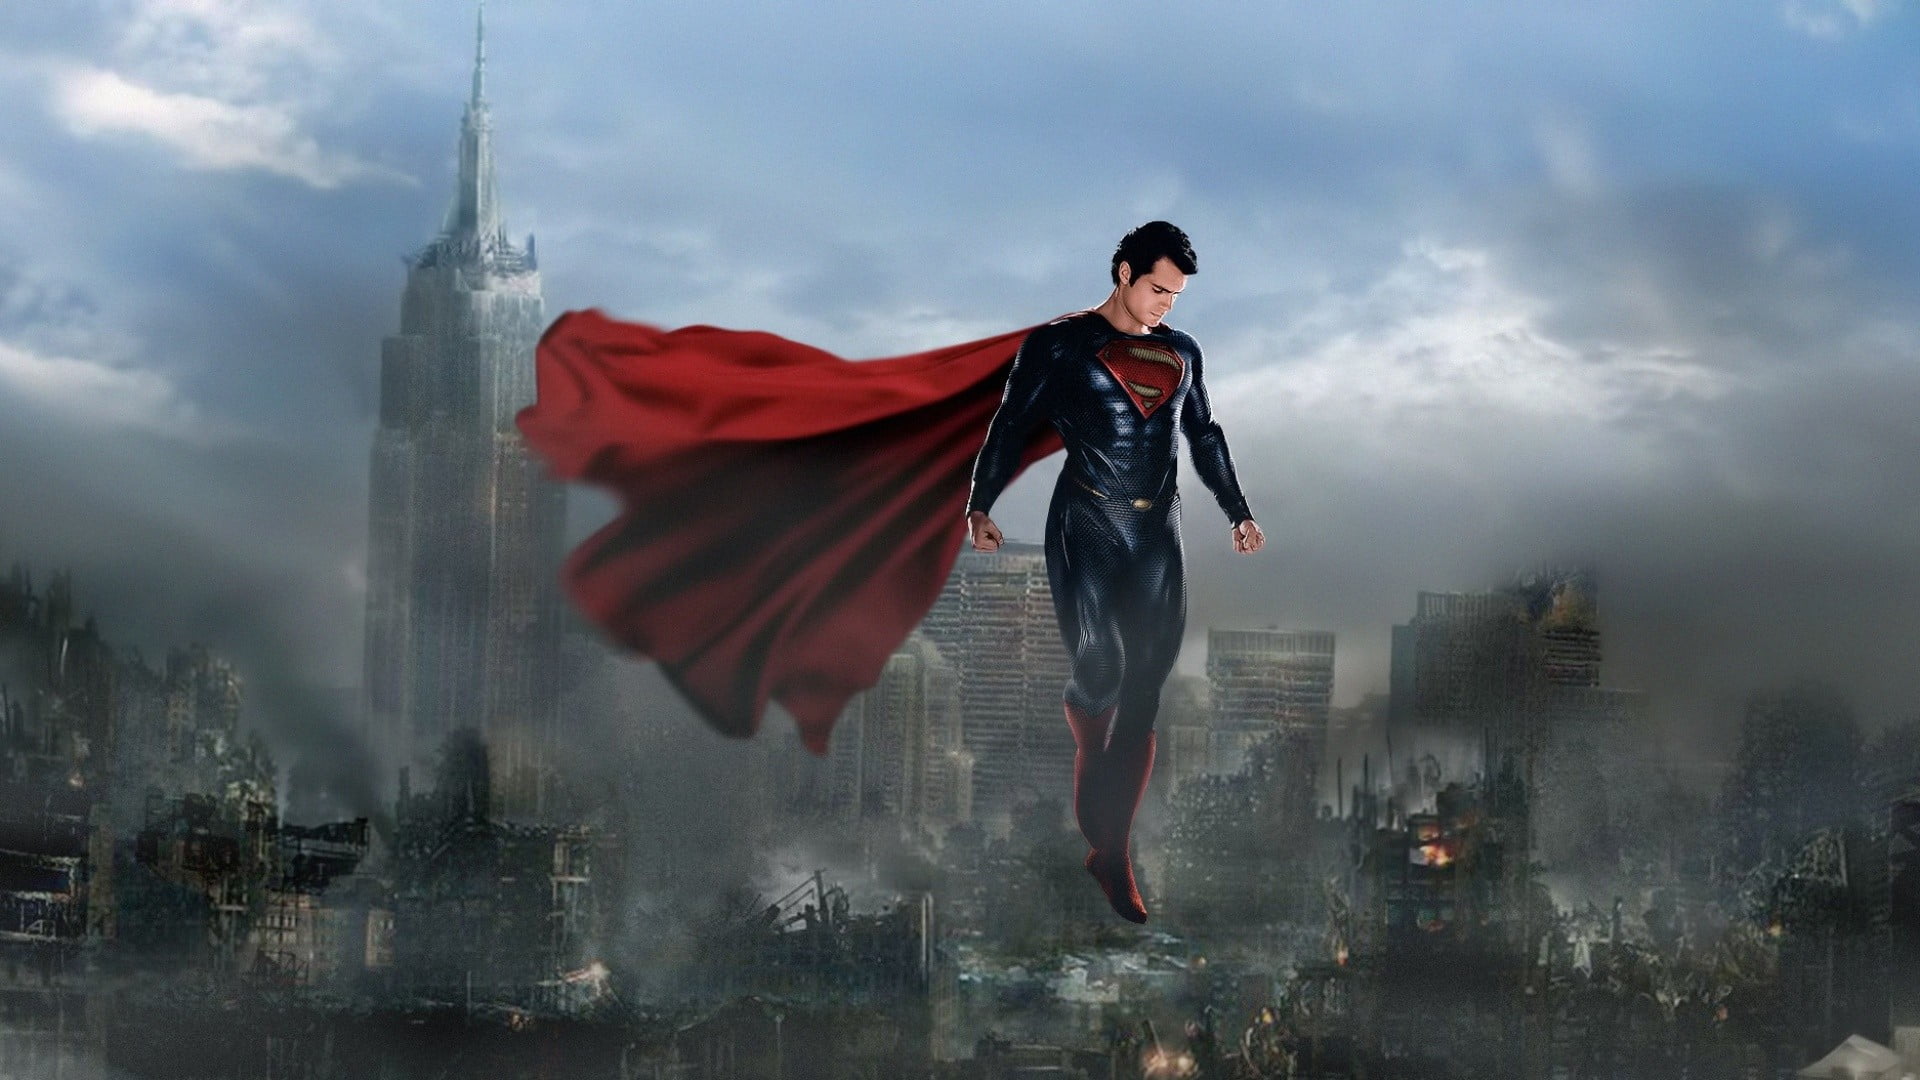 강철의 남자 벽지,슈퍼맨,슈퍼 히어로,소설 속의 인물,사법 리그,cg 삽화